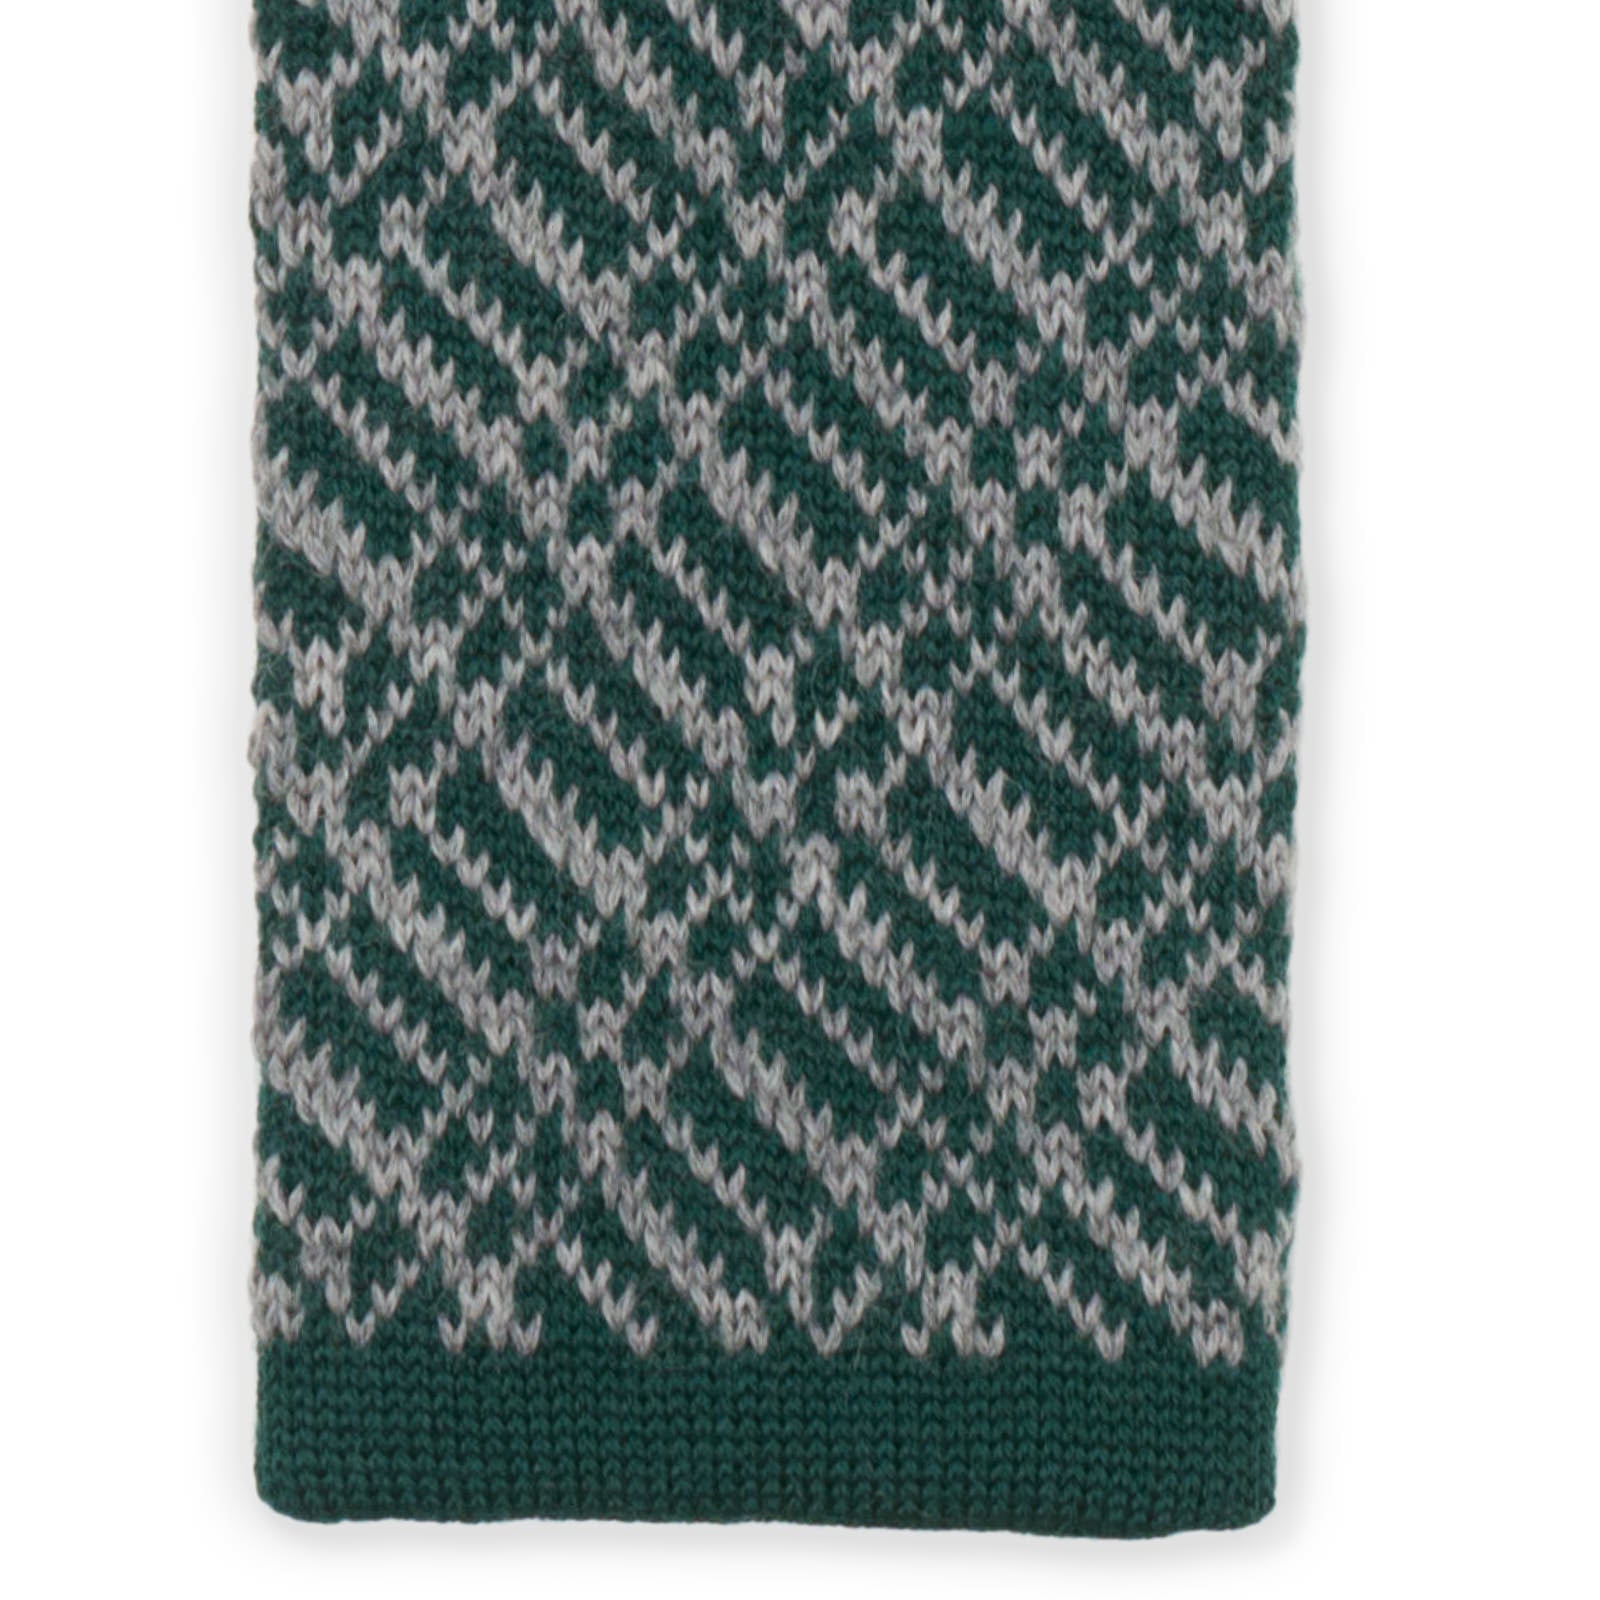 MATTABISCH FOR VANNUCCI Dark Green Geometric Pattern Wool Knit Tie NEW